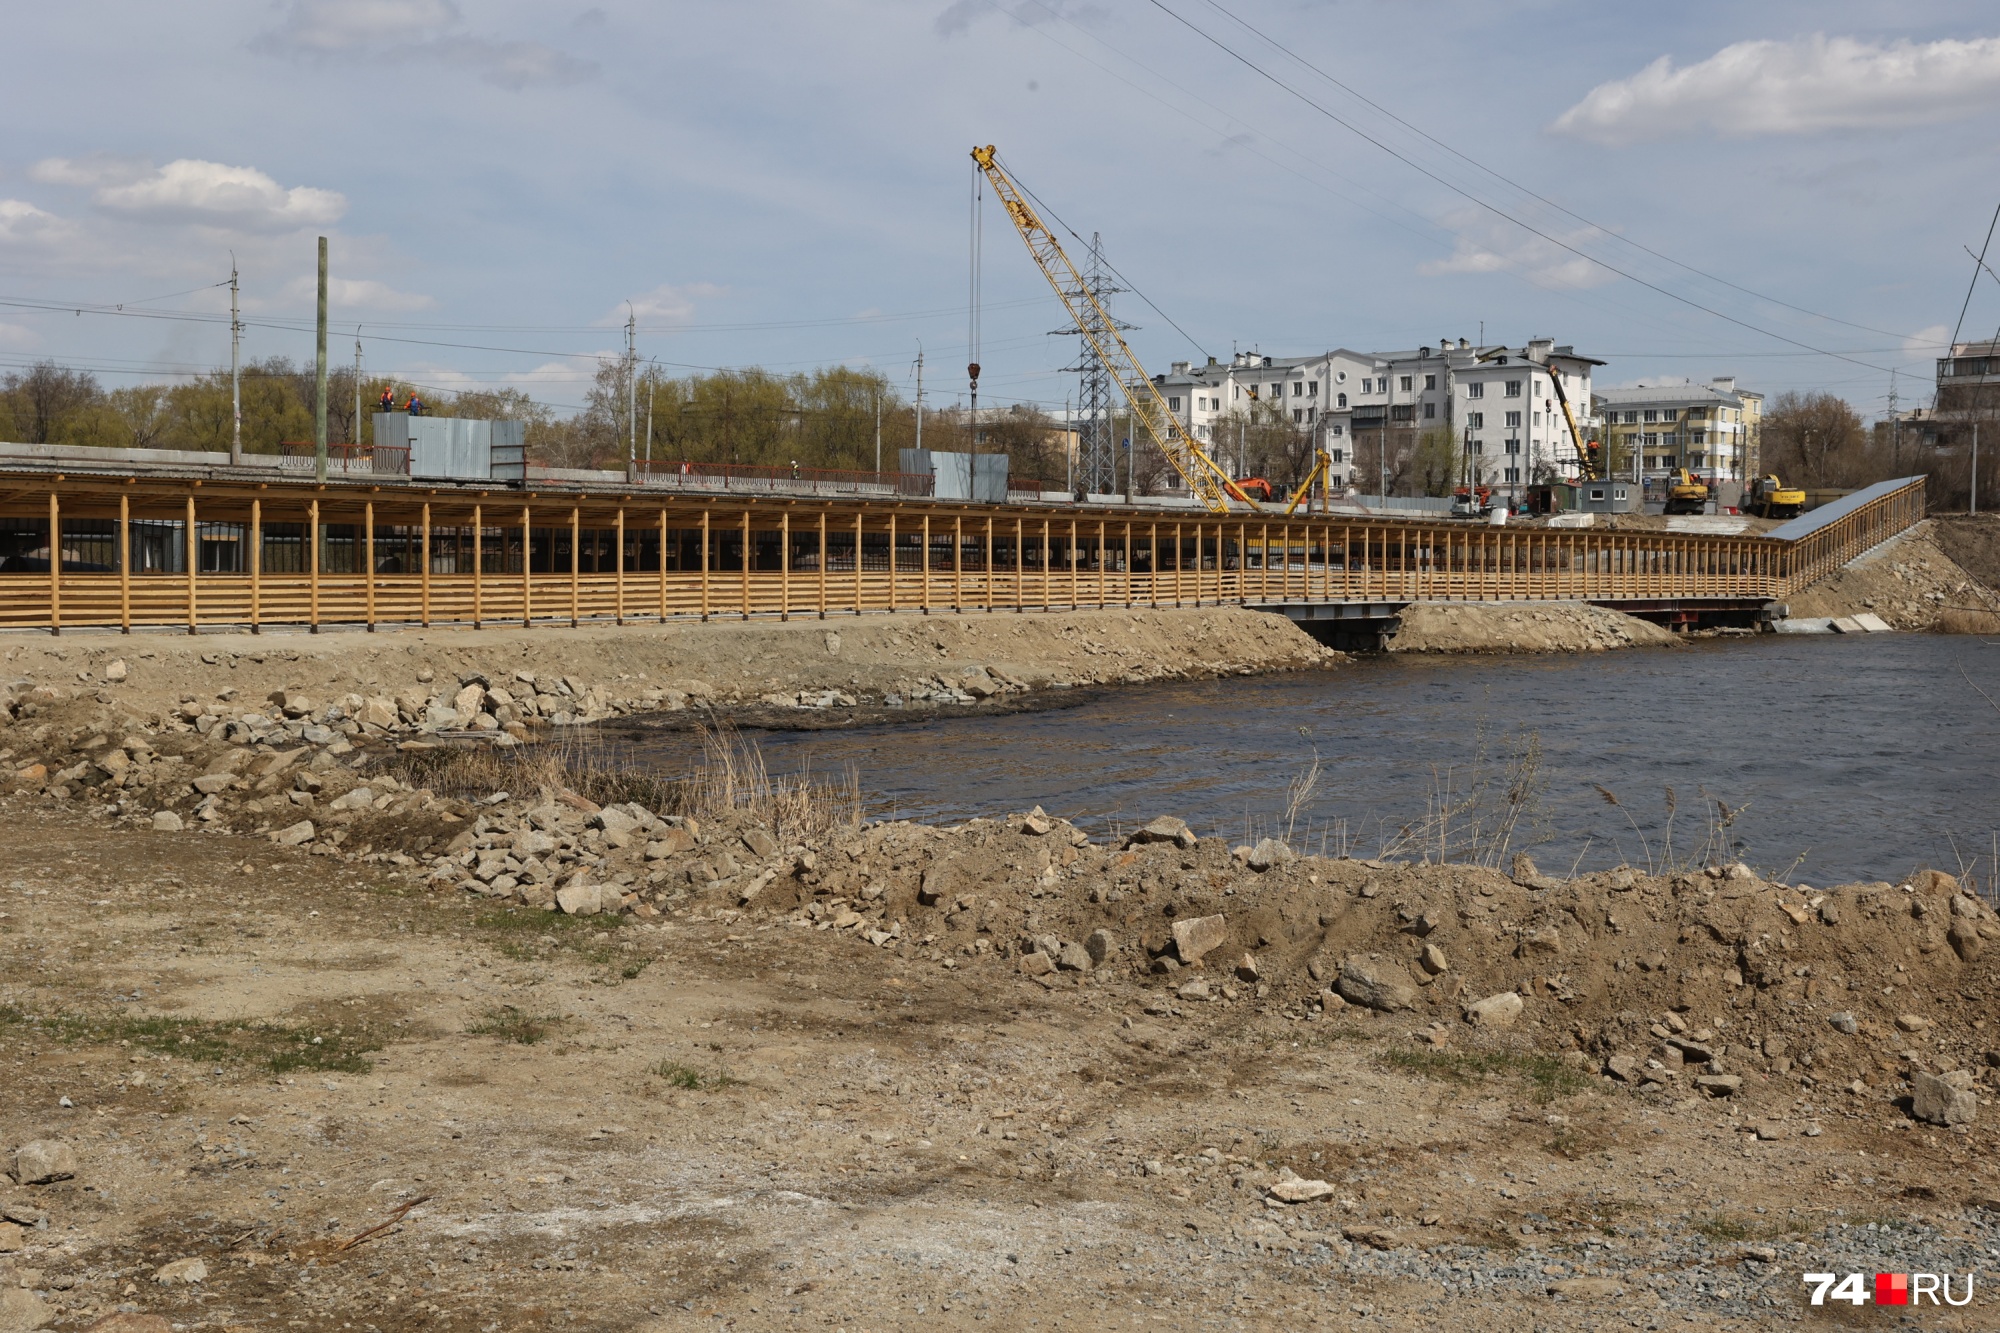 ленинградский мост в челябинске